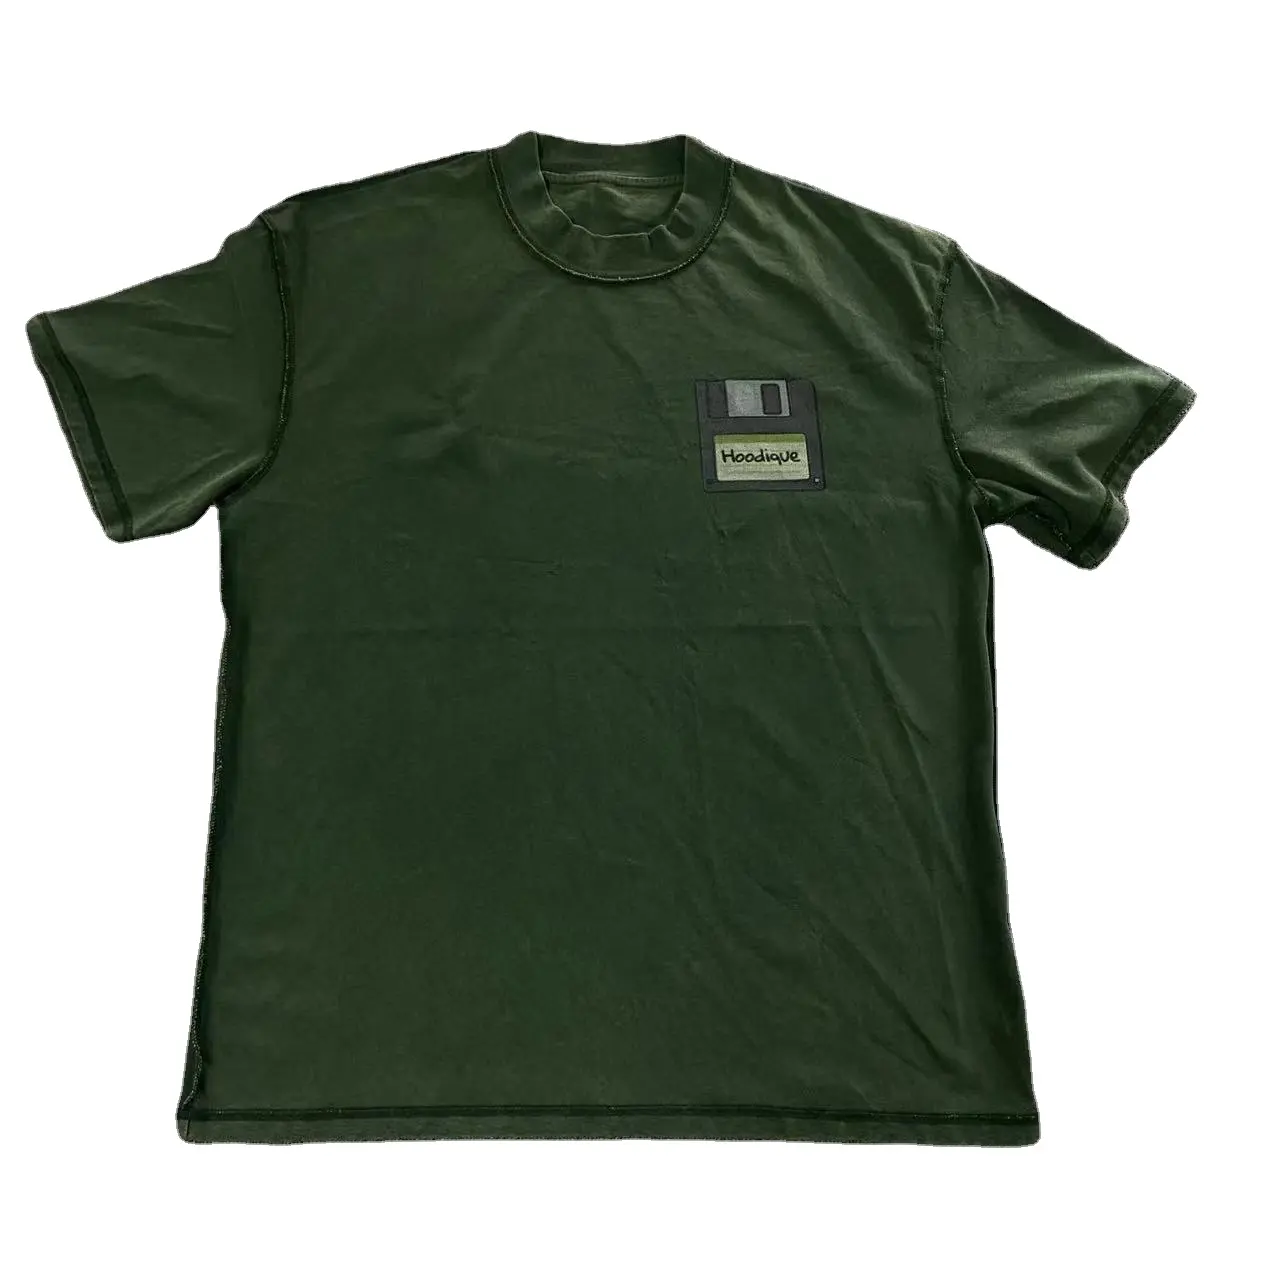 뜨거운 판매 대형 헤비급 라운드 넥 티셔츠 맞춤 디지털 프린트 남여 공용 티셔츠 백스티치 실 다크 그린 티셔츠